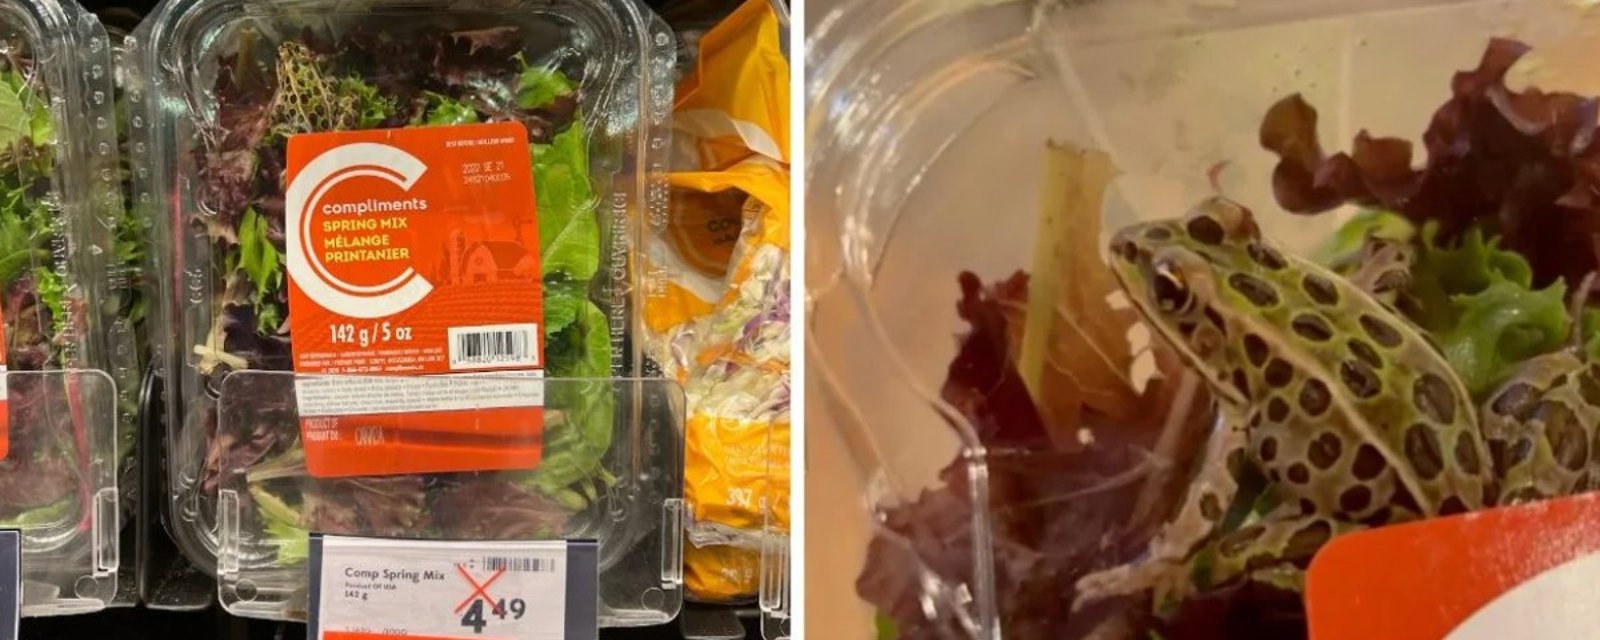 Une cliente d'une épicerie trouve une grenouille vivante dans un emballage de salade 